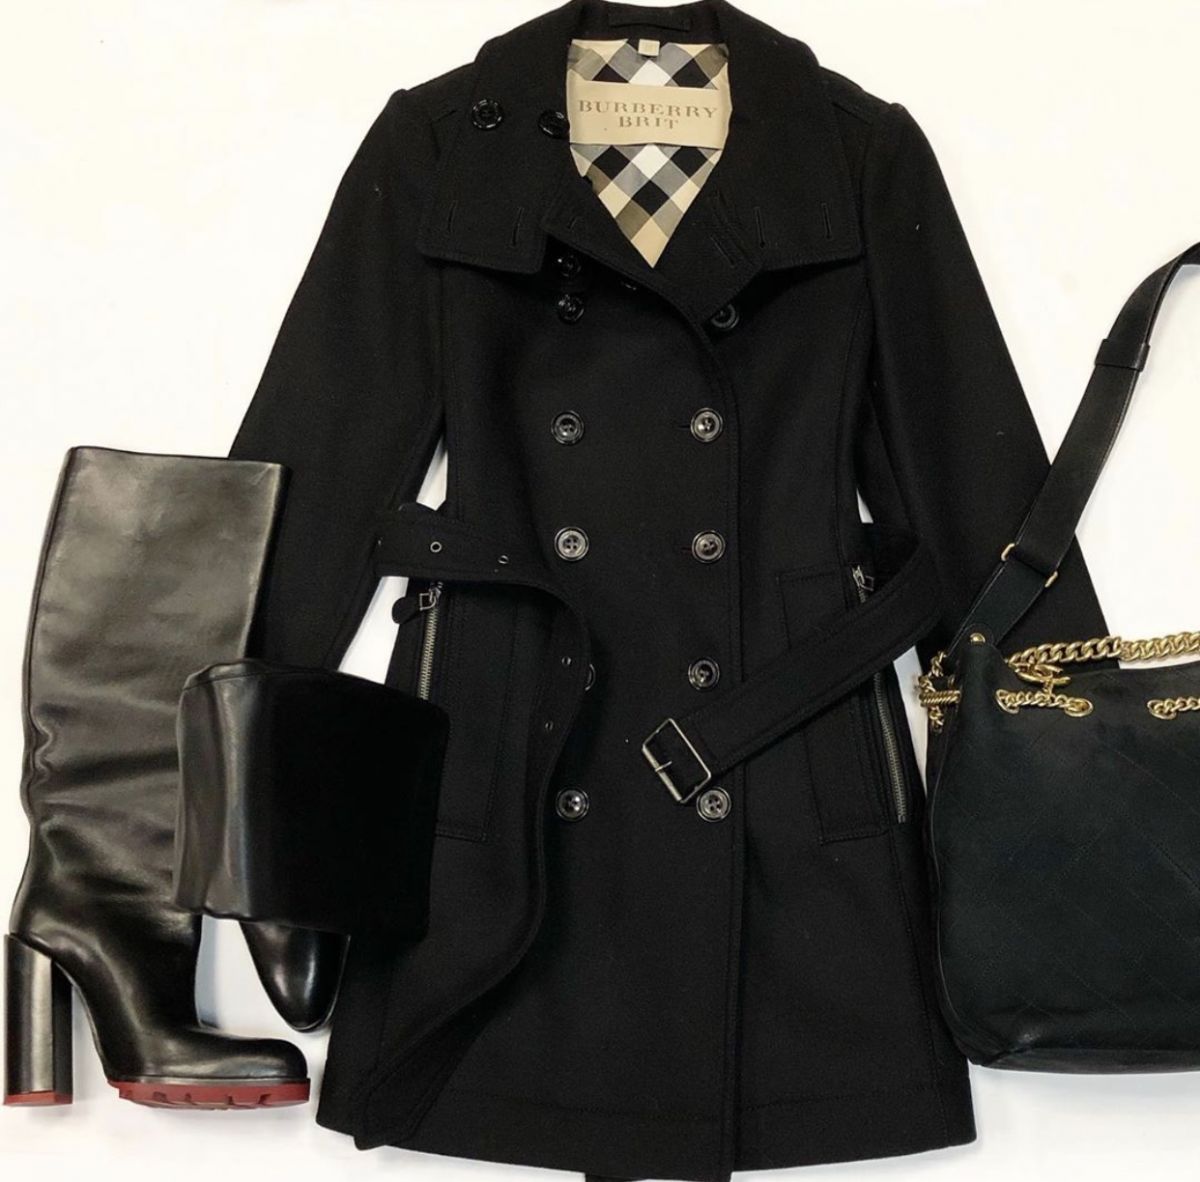 Пальто Burberry размер 36/40 цена 30 770 руб Сапоги Jil Sander размер 39 цена 12 308 рубСумка Chanel 